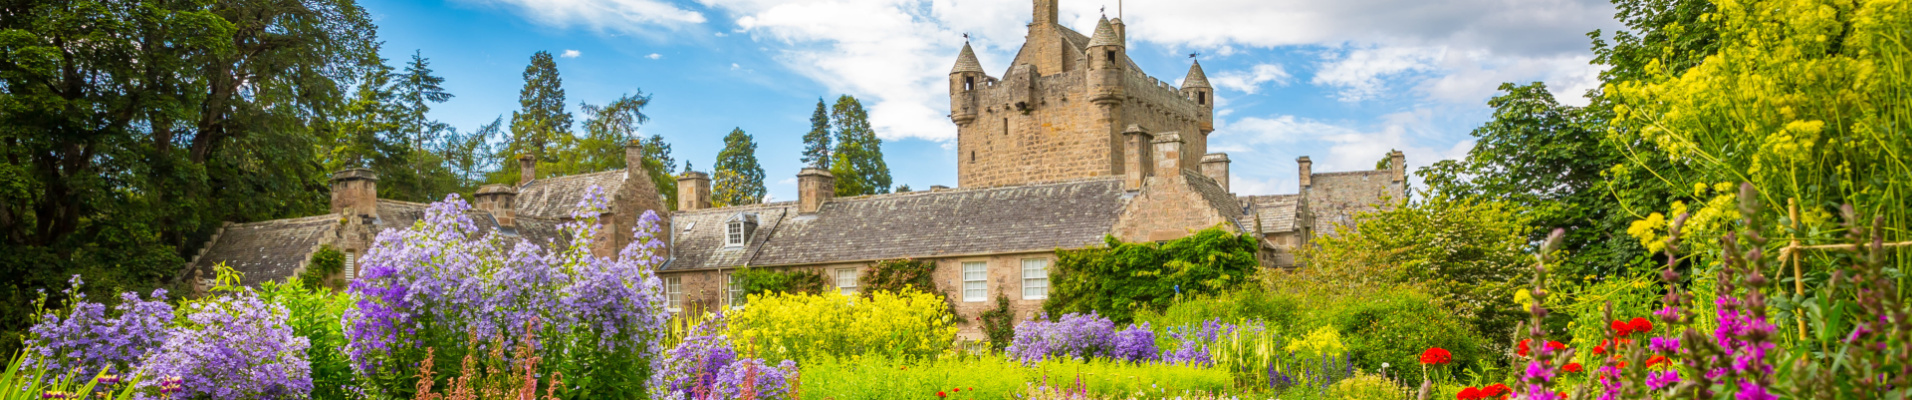 Chateau de Cawdor et jardins en fleurs